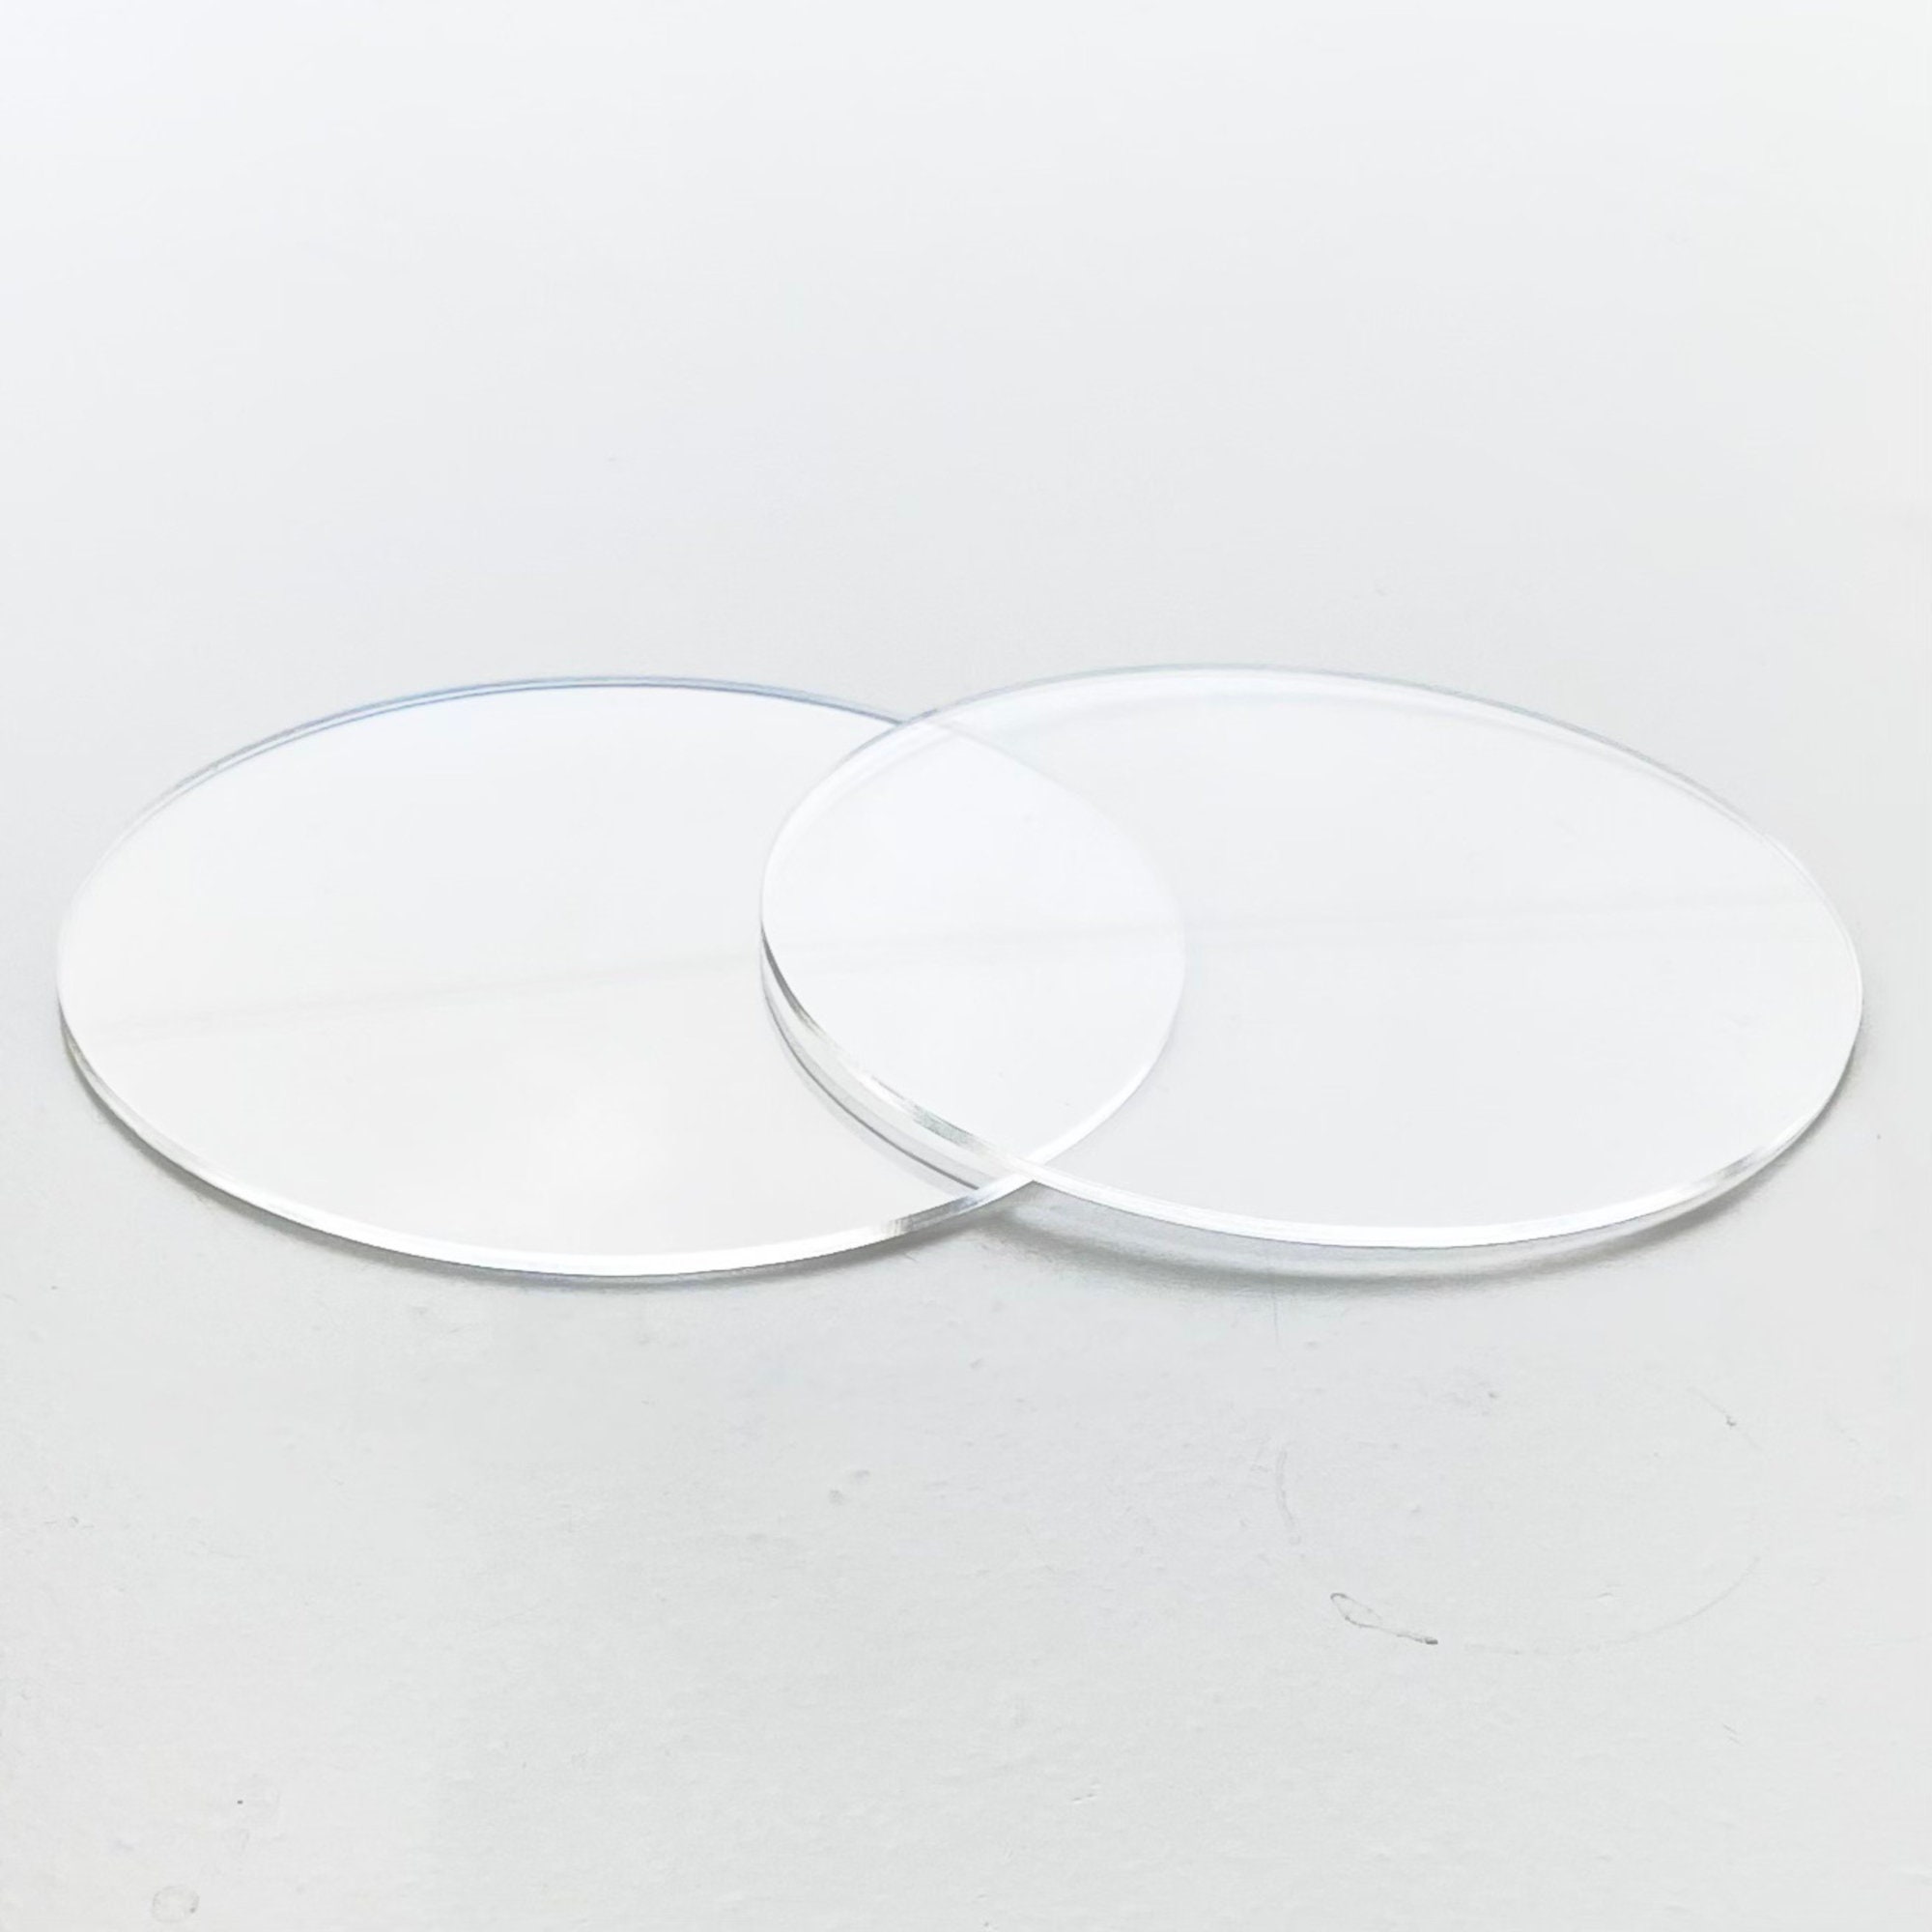 Acrylic Round Cake Disk Set - Cake Discs Base Boards With Hole - 2